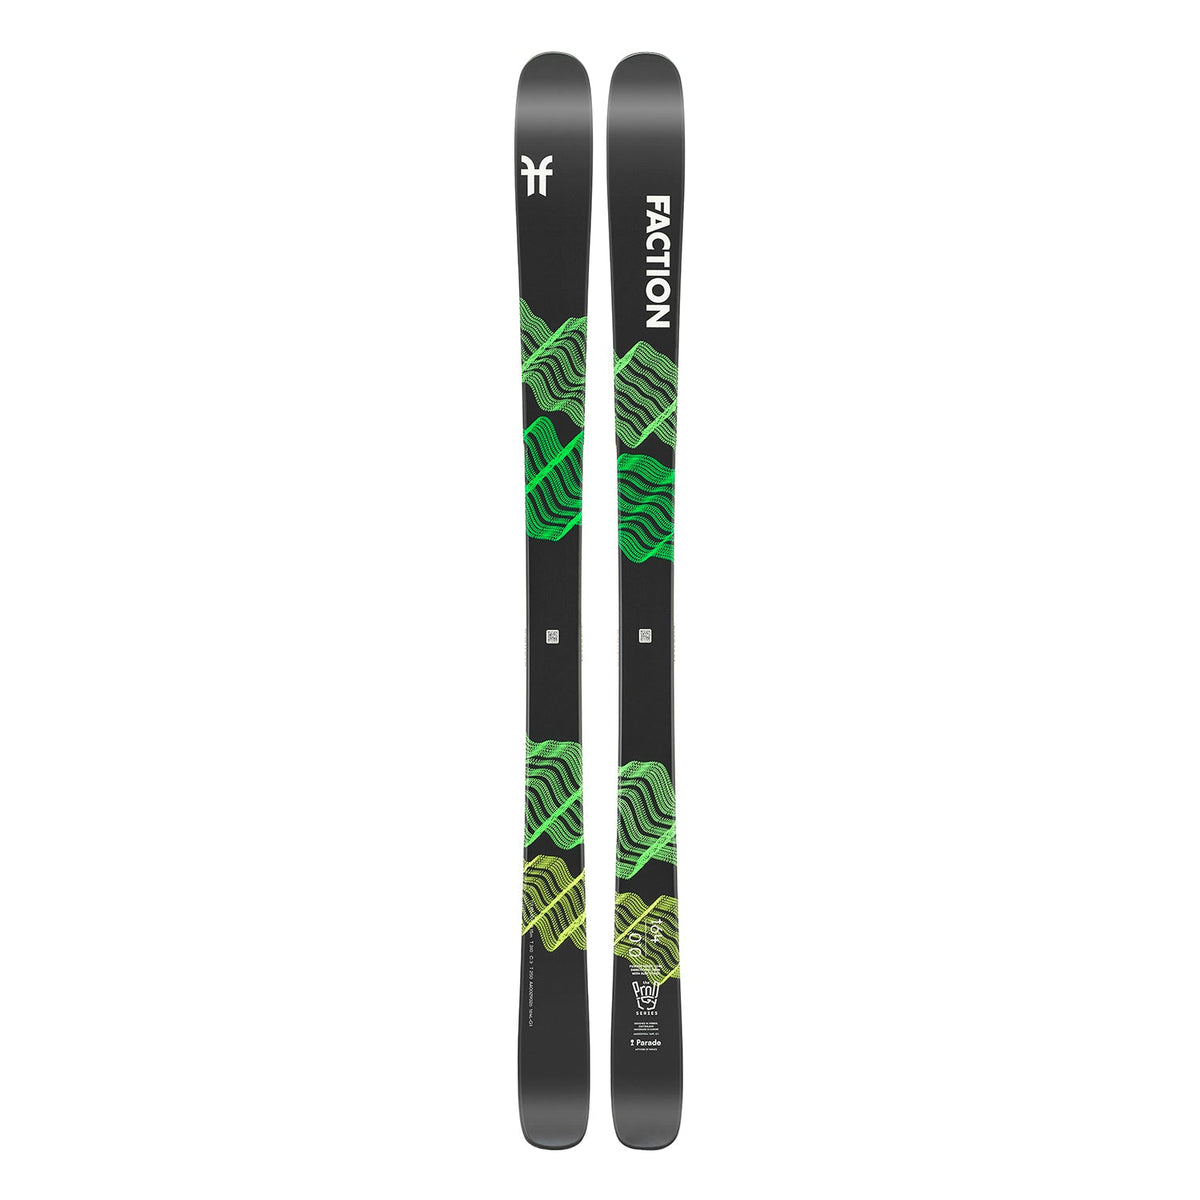 Faction Skis Prodigy 0.0 | Tip | All-Mountain Ski – Faction Skis US